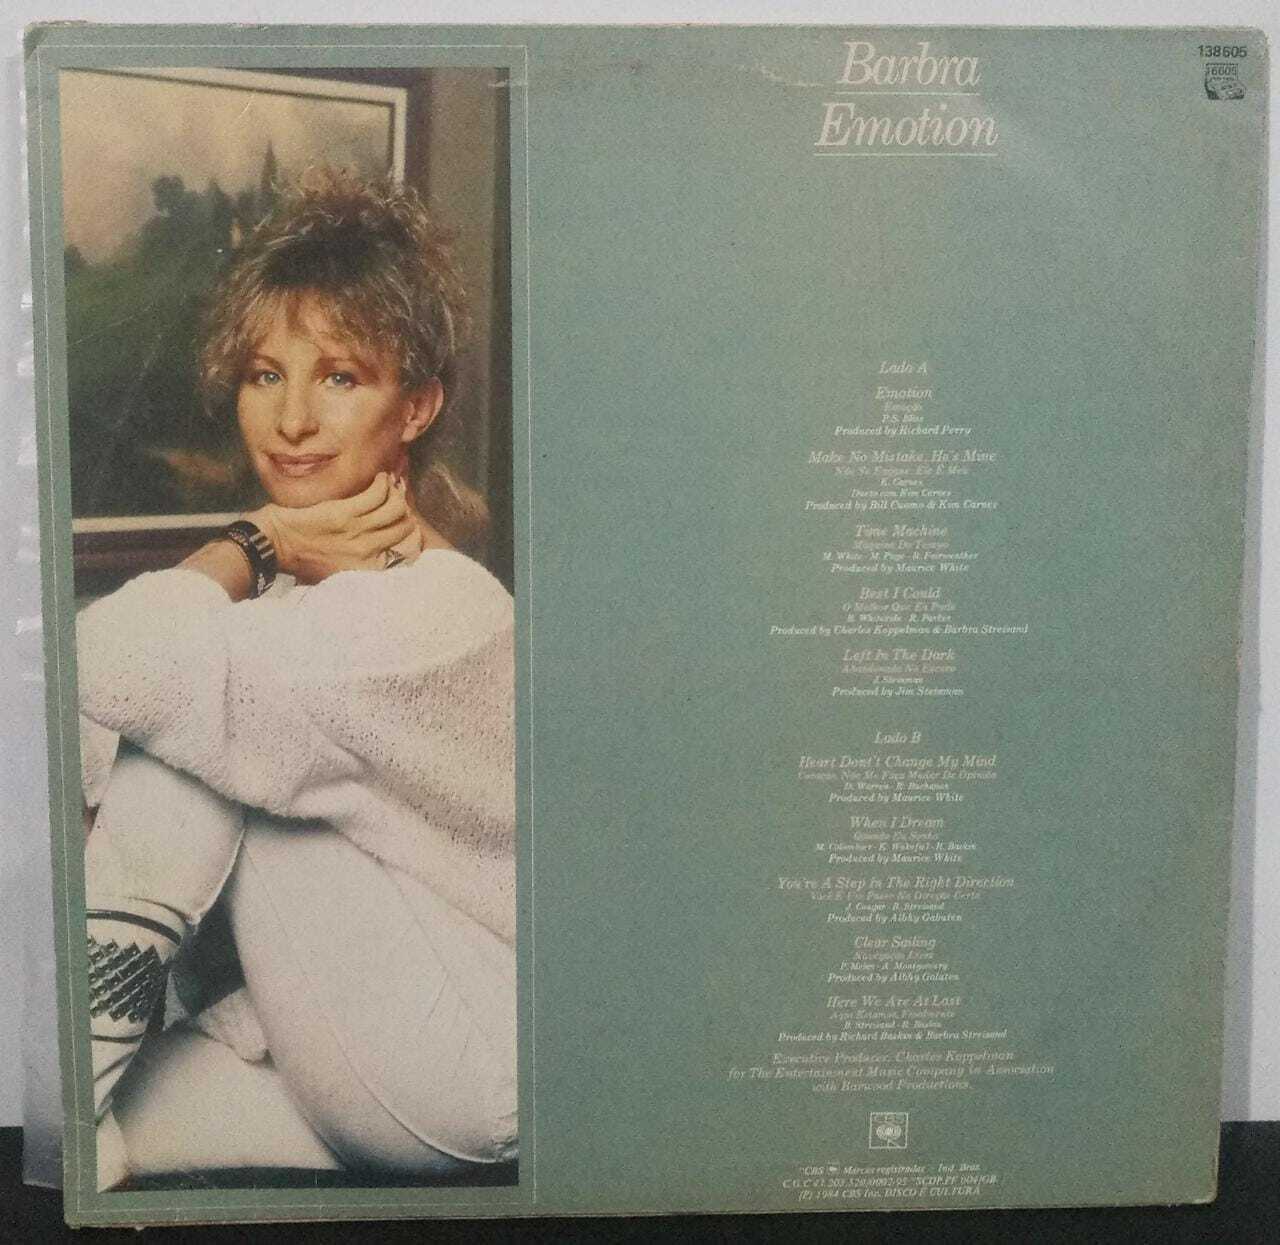 Vinil - Barbra Streisand - Emotion